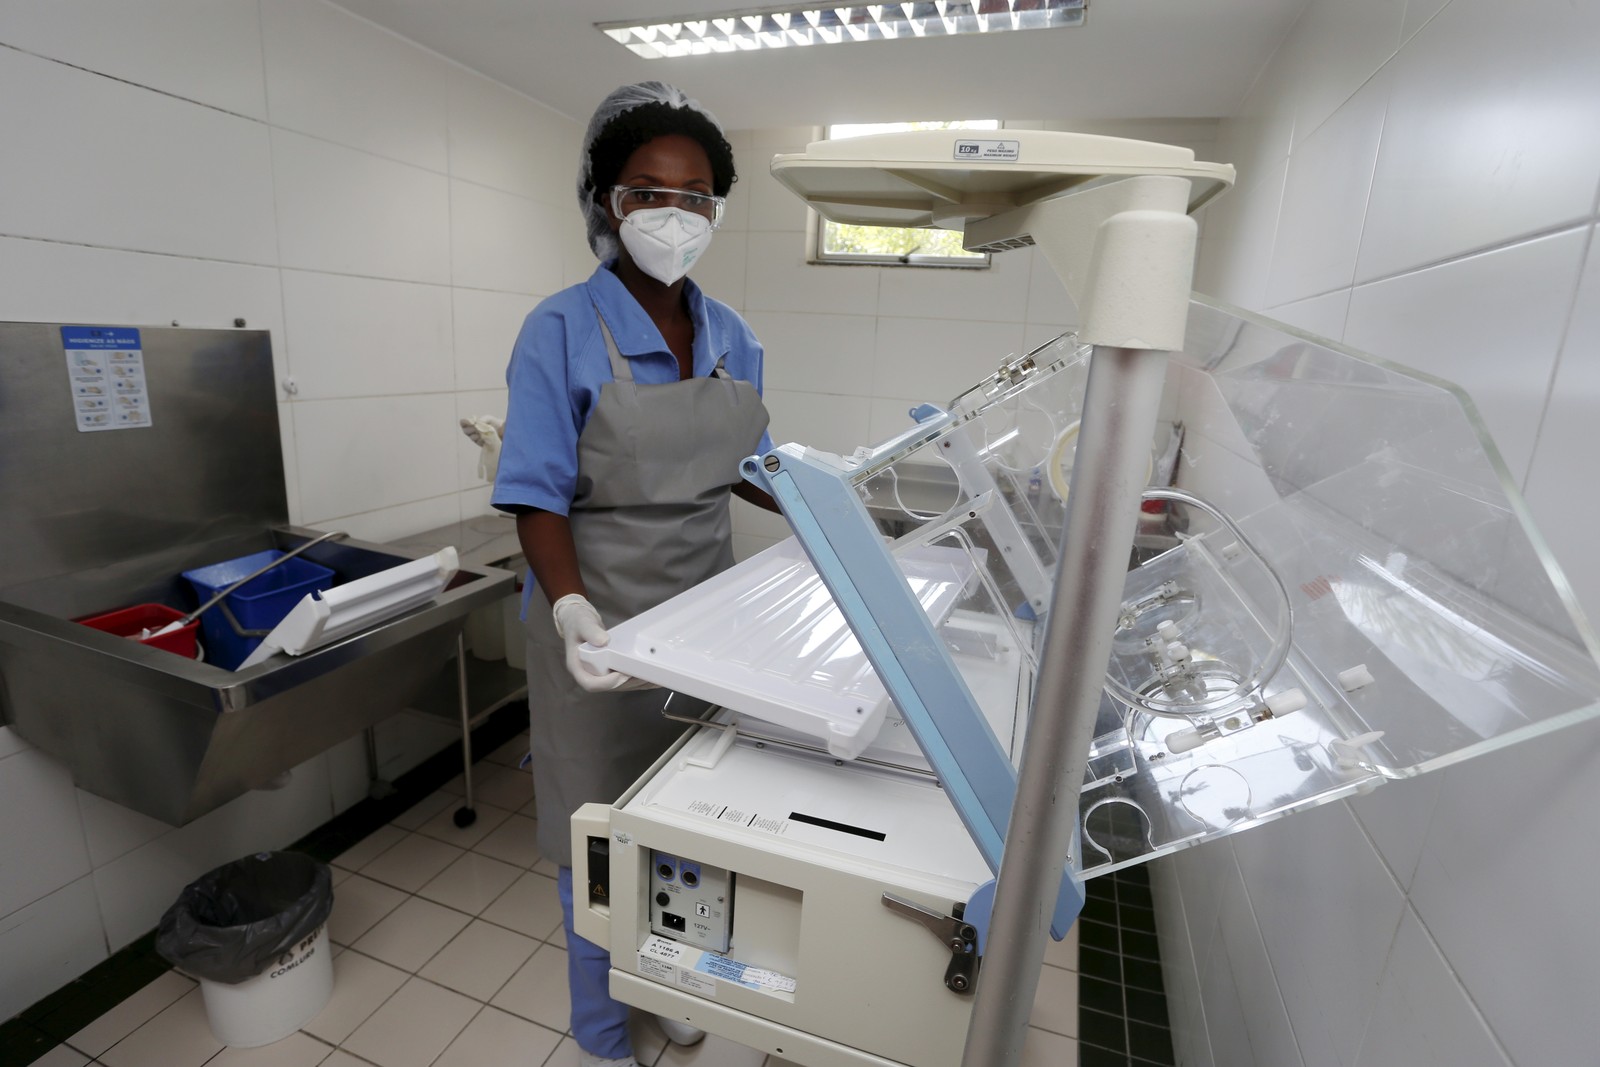 Profissionais da Comlurb fazem limpeza de incubadoras em três maternidades públicas — Foto: Fabiano Rocha